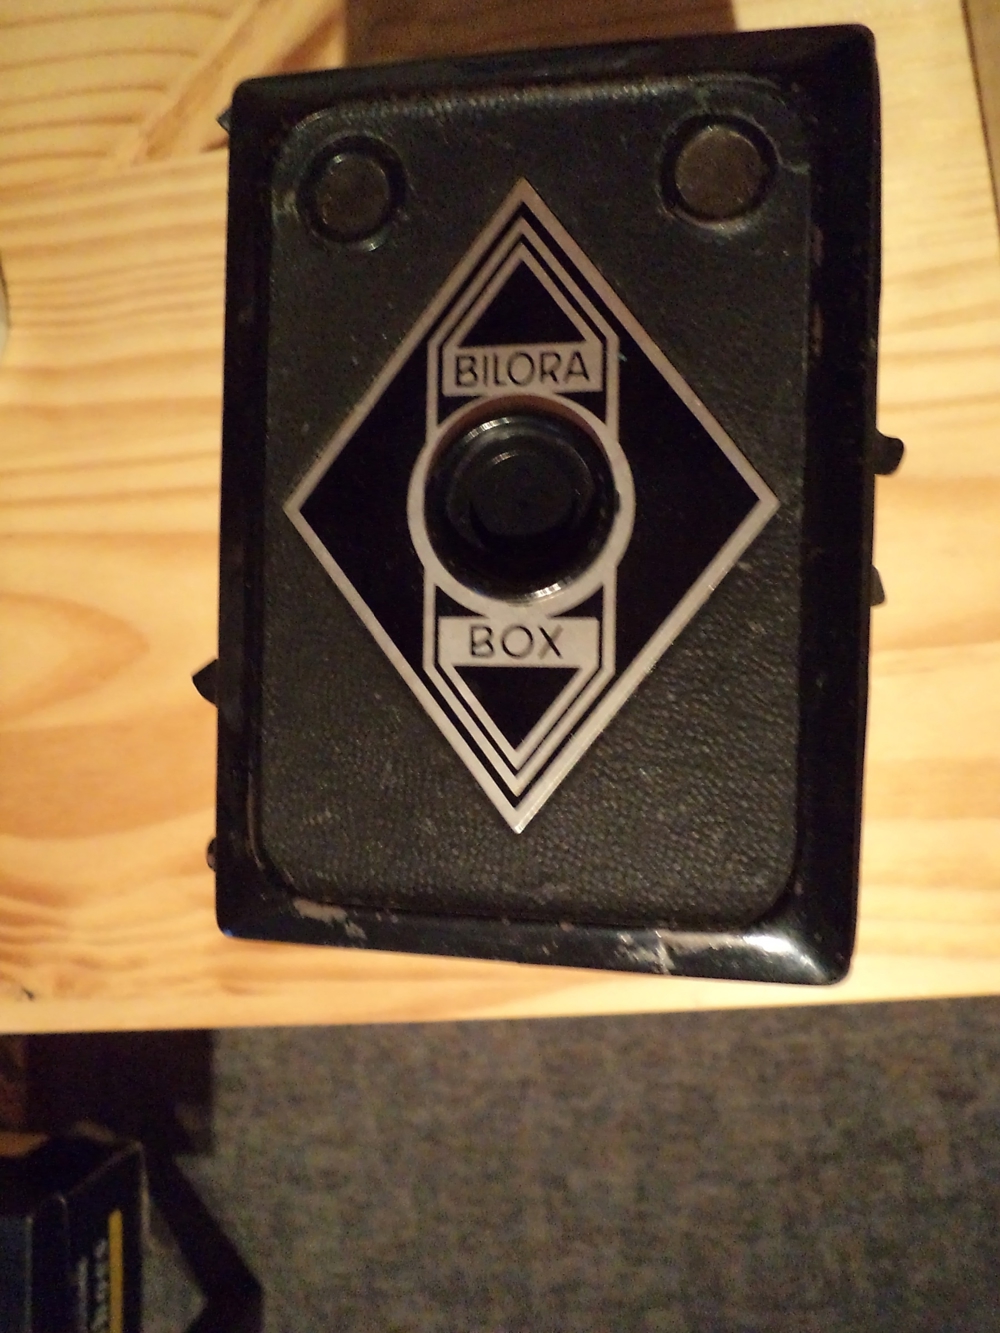 Antike Kamera   Fotoapparat "Bilora Box" , RETRO, sehr alt, 30er Jahre, Vintage Kamera, gut erhalten